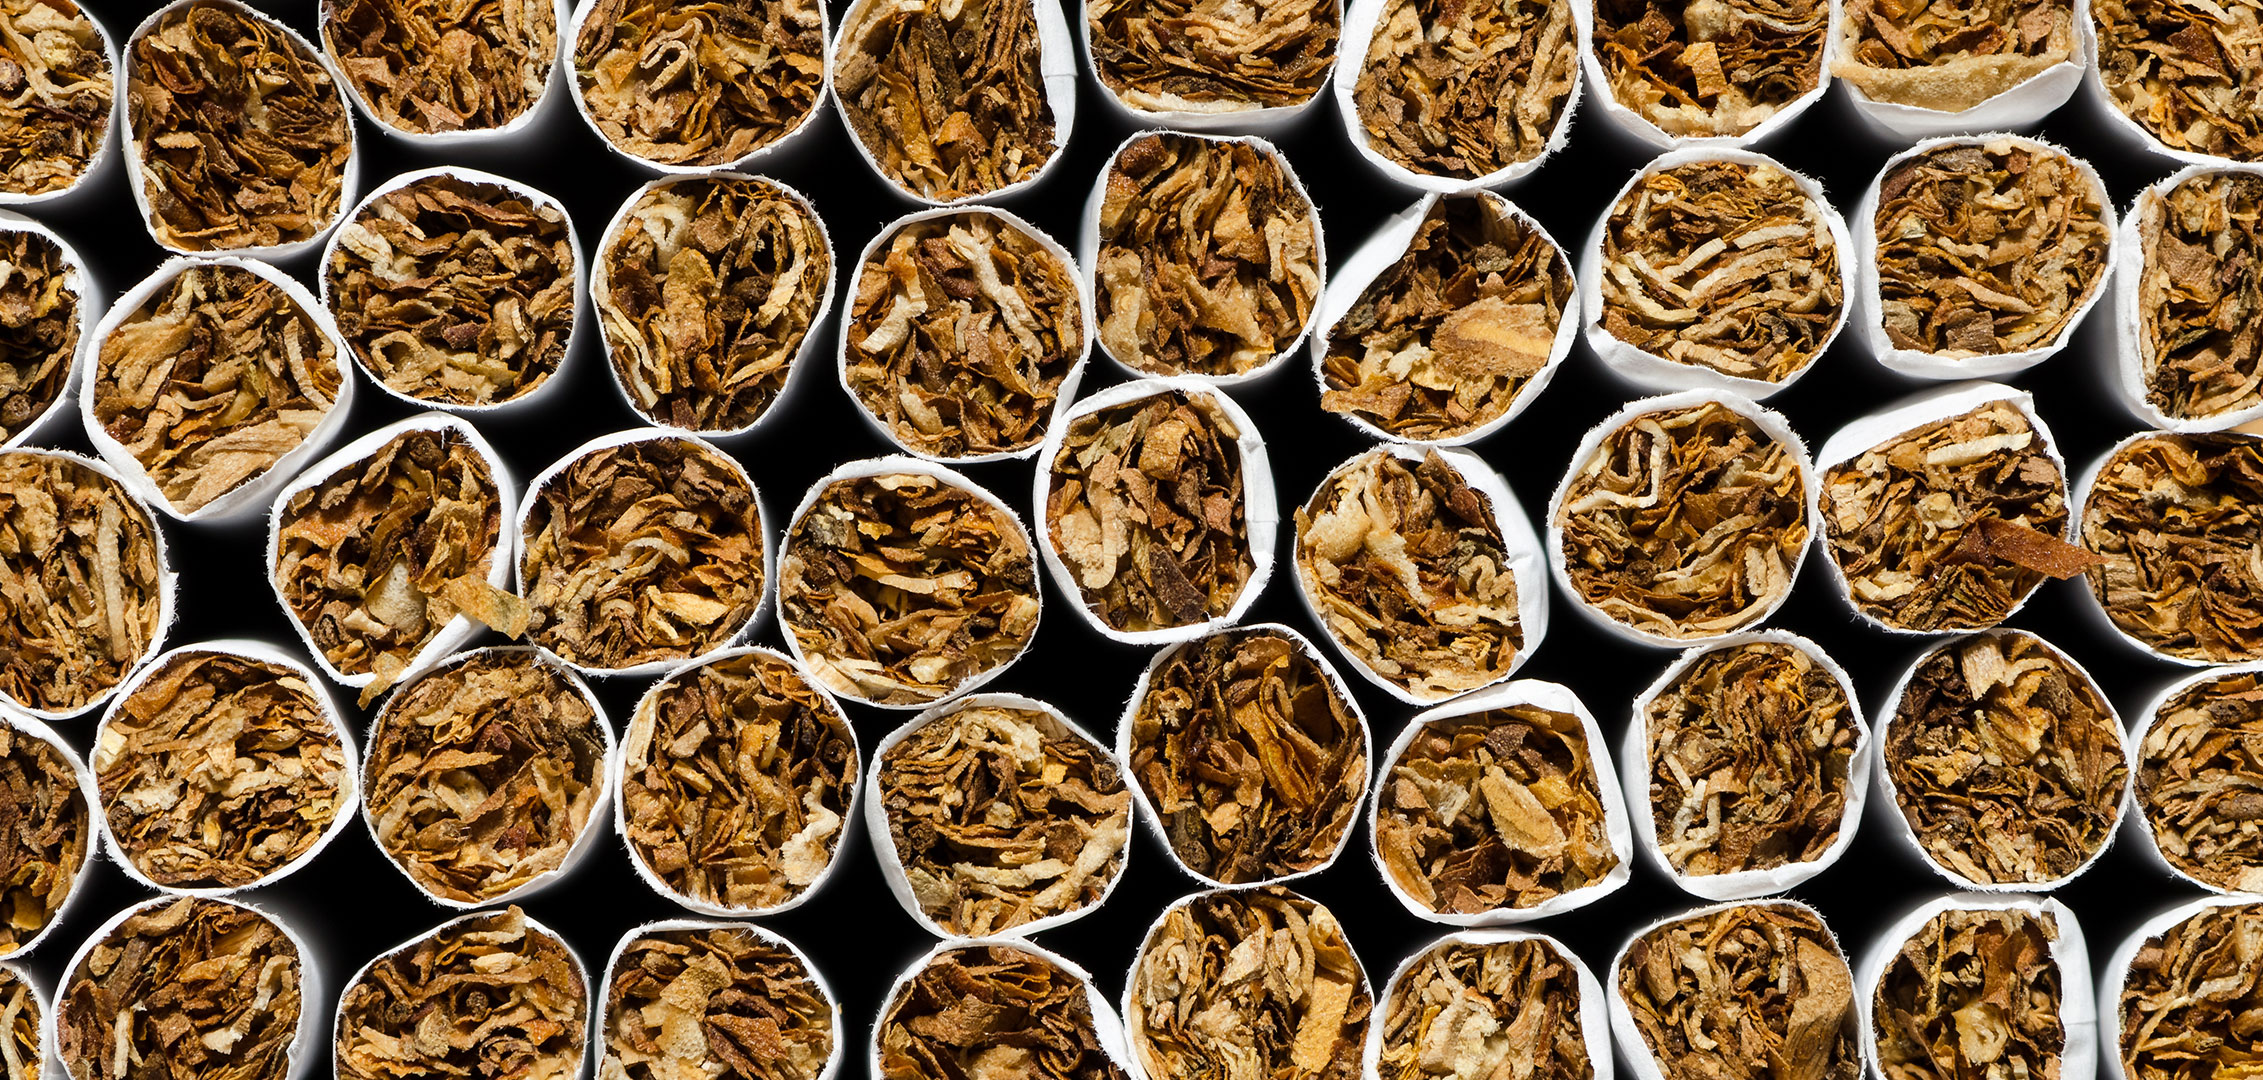 “Pandemia do cigarro” agrava Covid-19 e aprofunda rombo nos cofres públicos